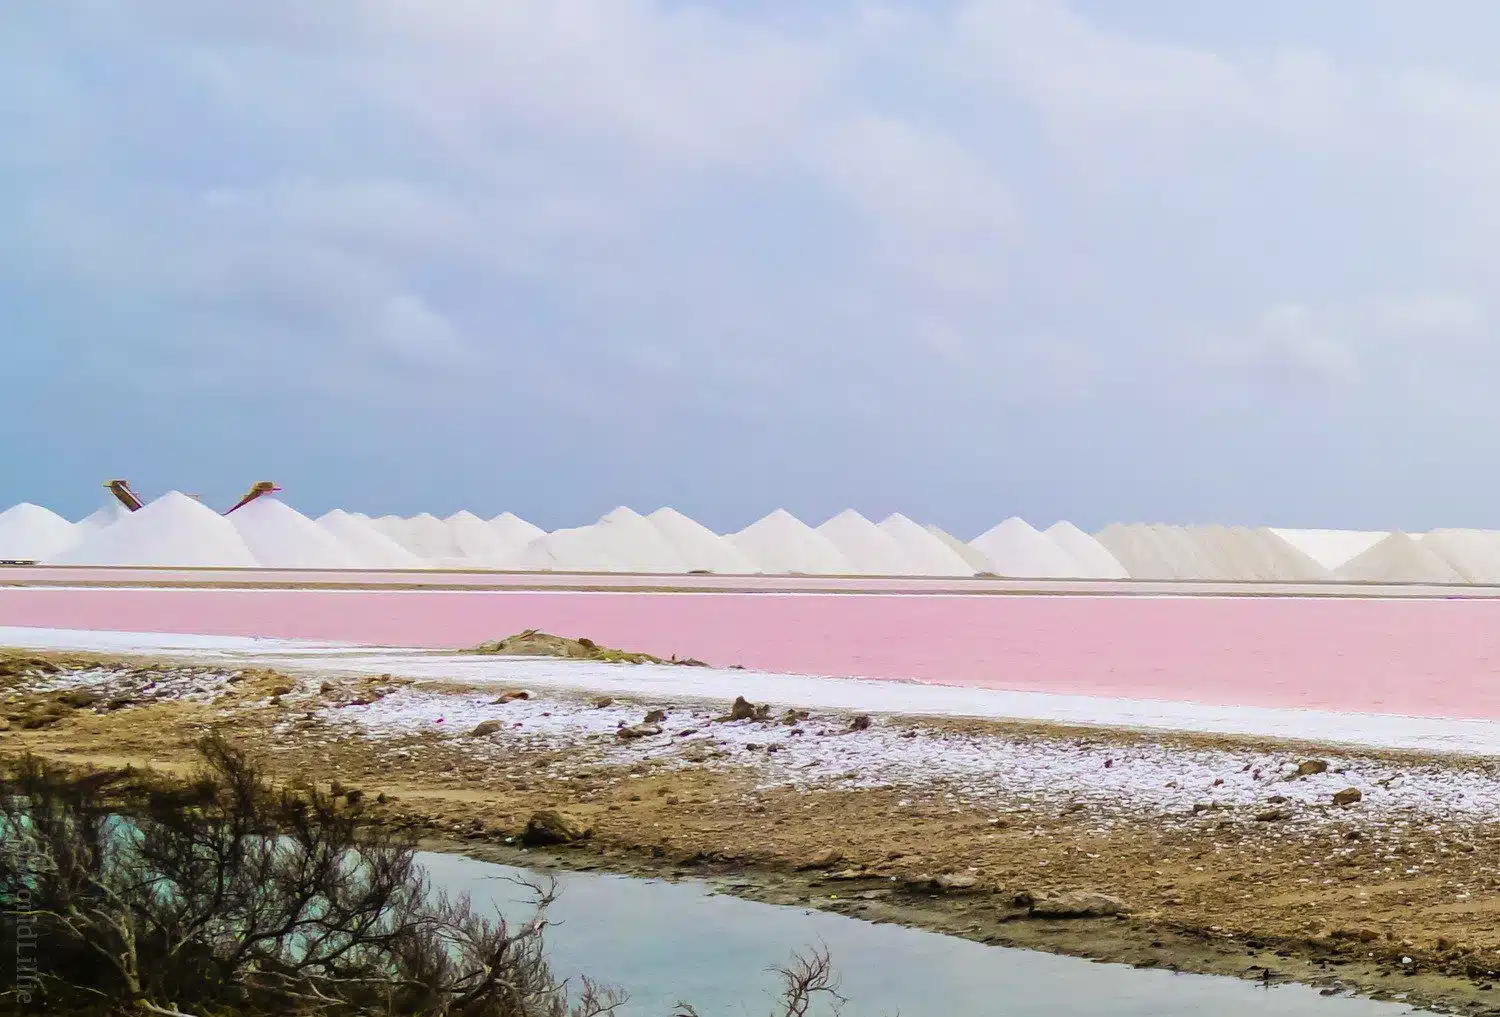 Bonaire’s famous pink salt flats.